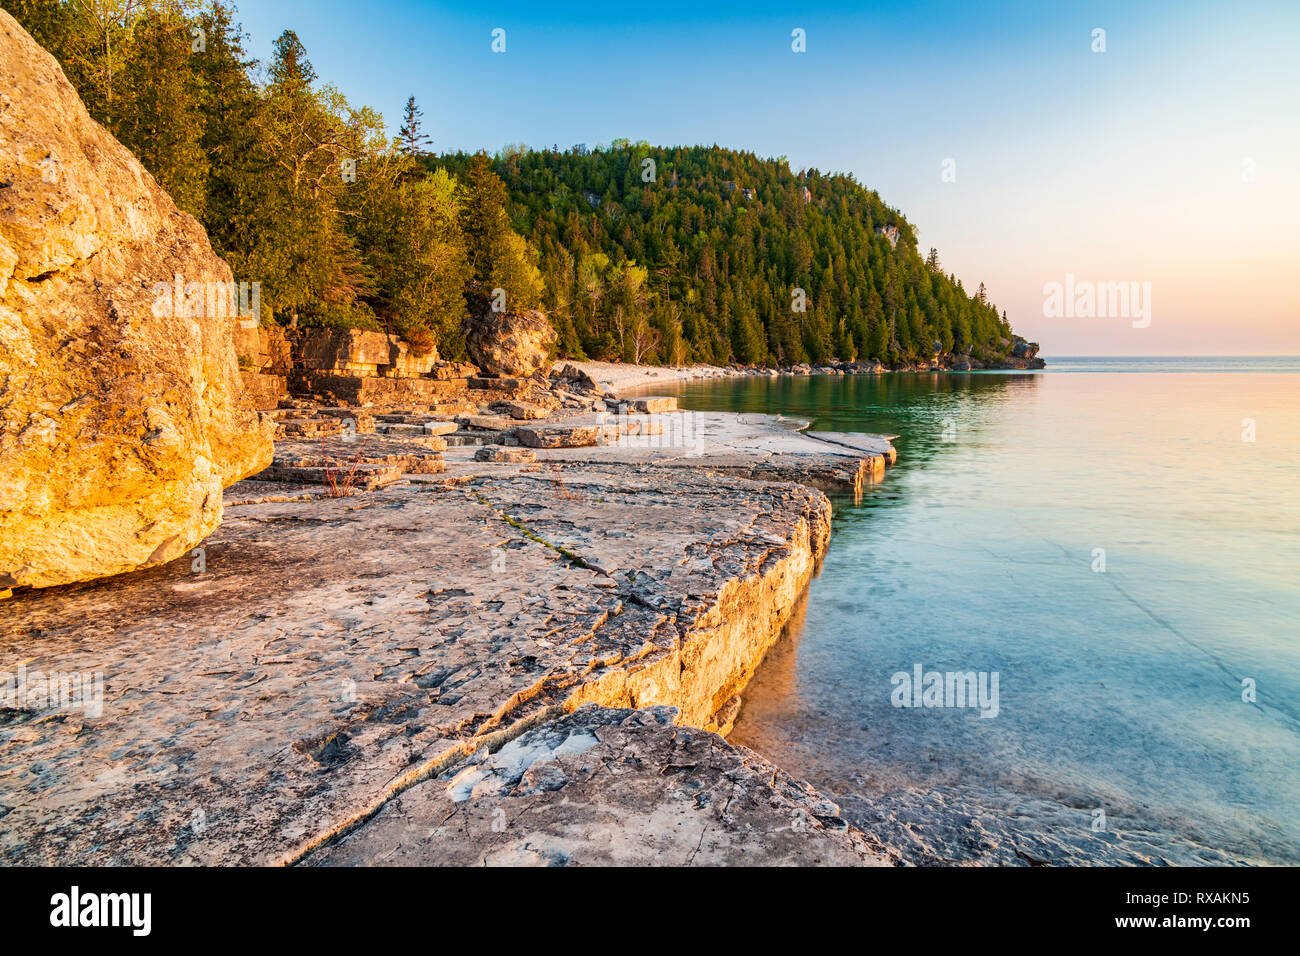 Slabbed Kalkstein Küstenlinie von Blumentopf Insel ist Gold von der aufgehenden Sonne über Georgian Bay, Fathom Five National Marine Park, Ontario, Kanada, getönt Stockfoto